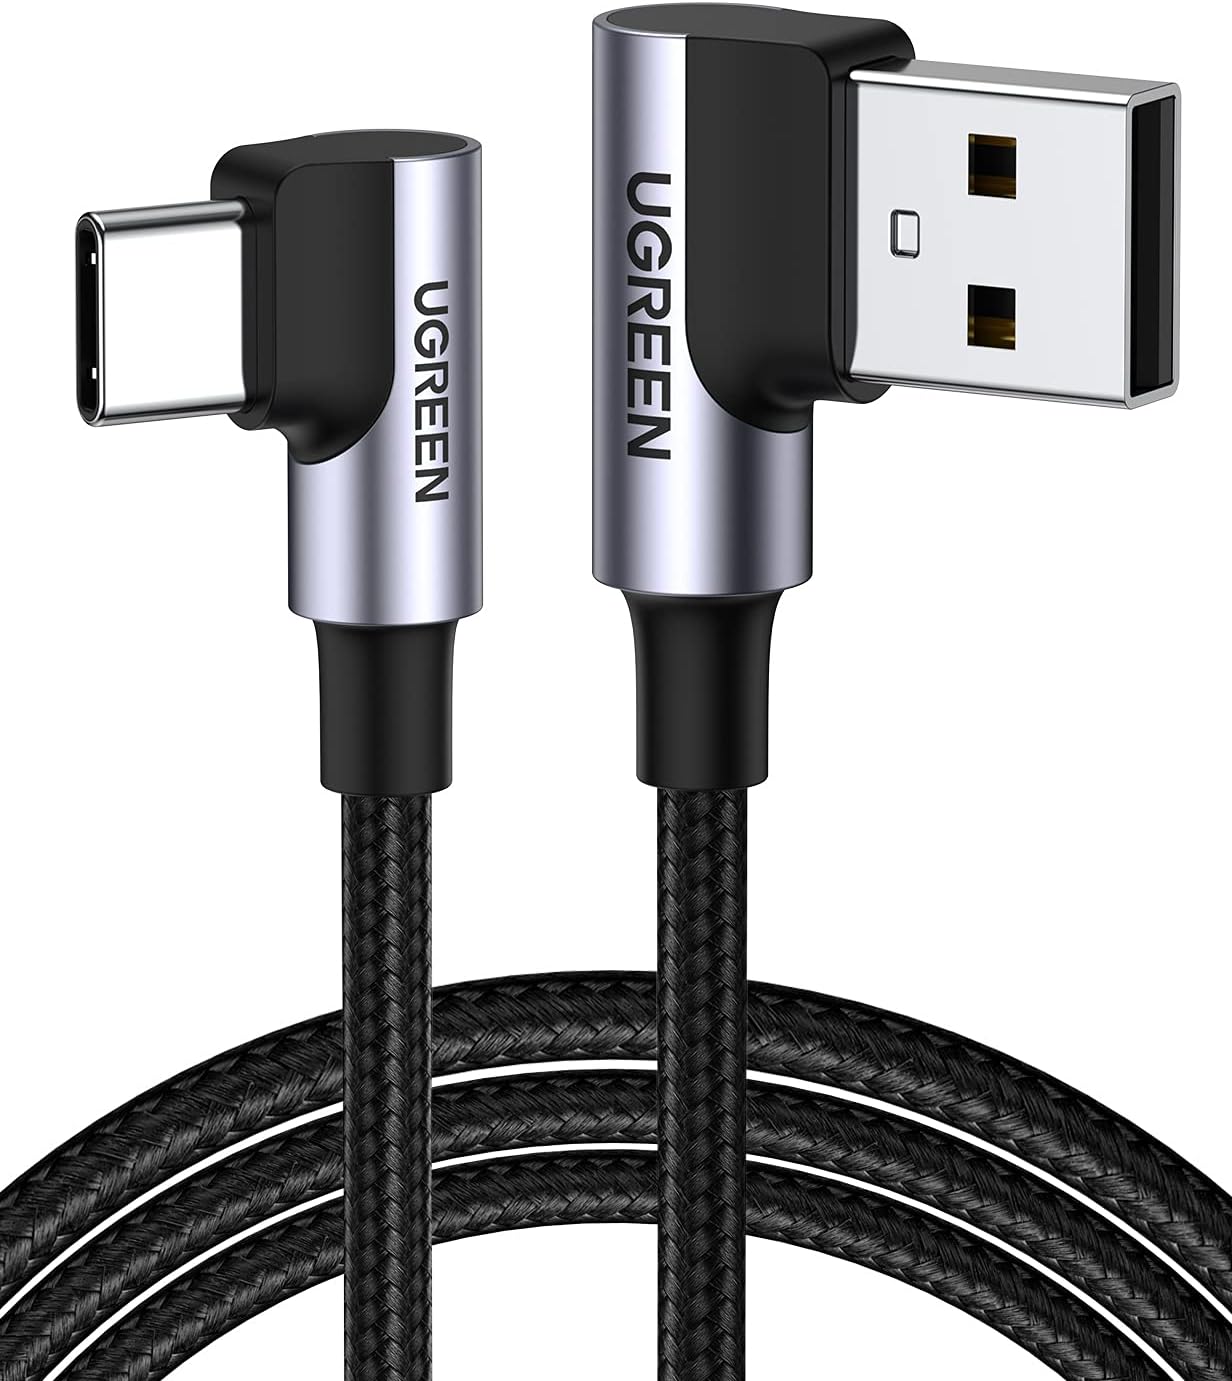 20857 Кабель UGREEN US176 USB 2.0 - USB Type-C, угловой, оплетка, цвет: черный, 2M